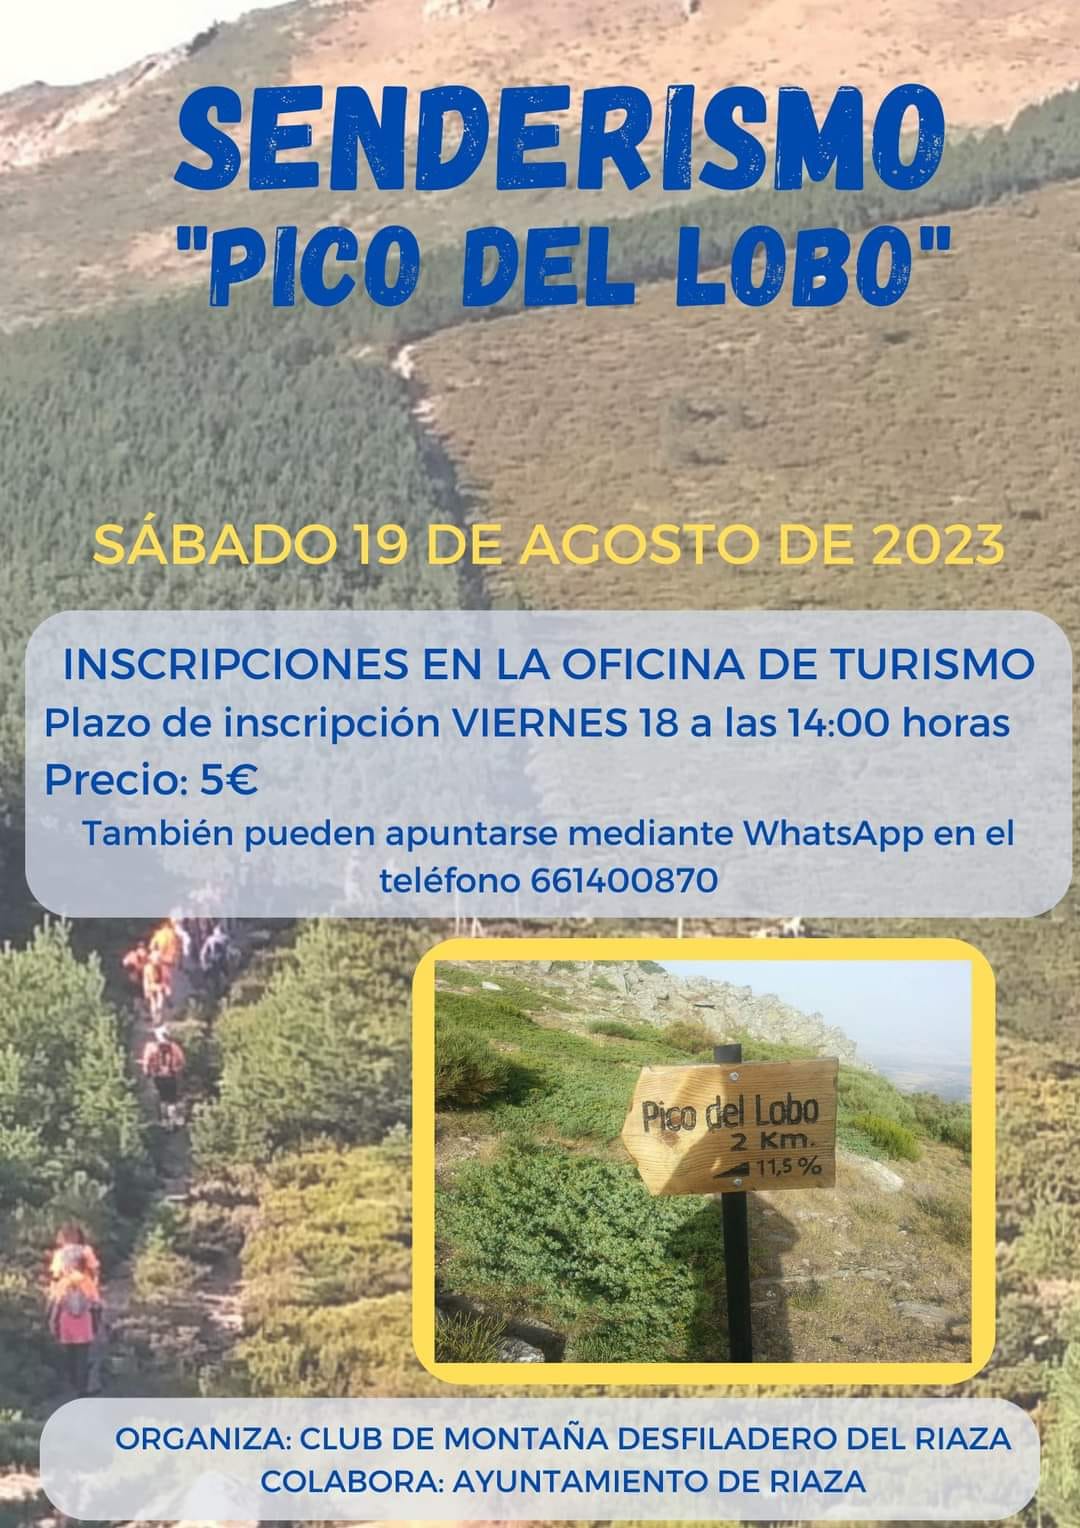 Pico_del_lobo.jpg